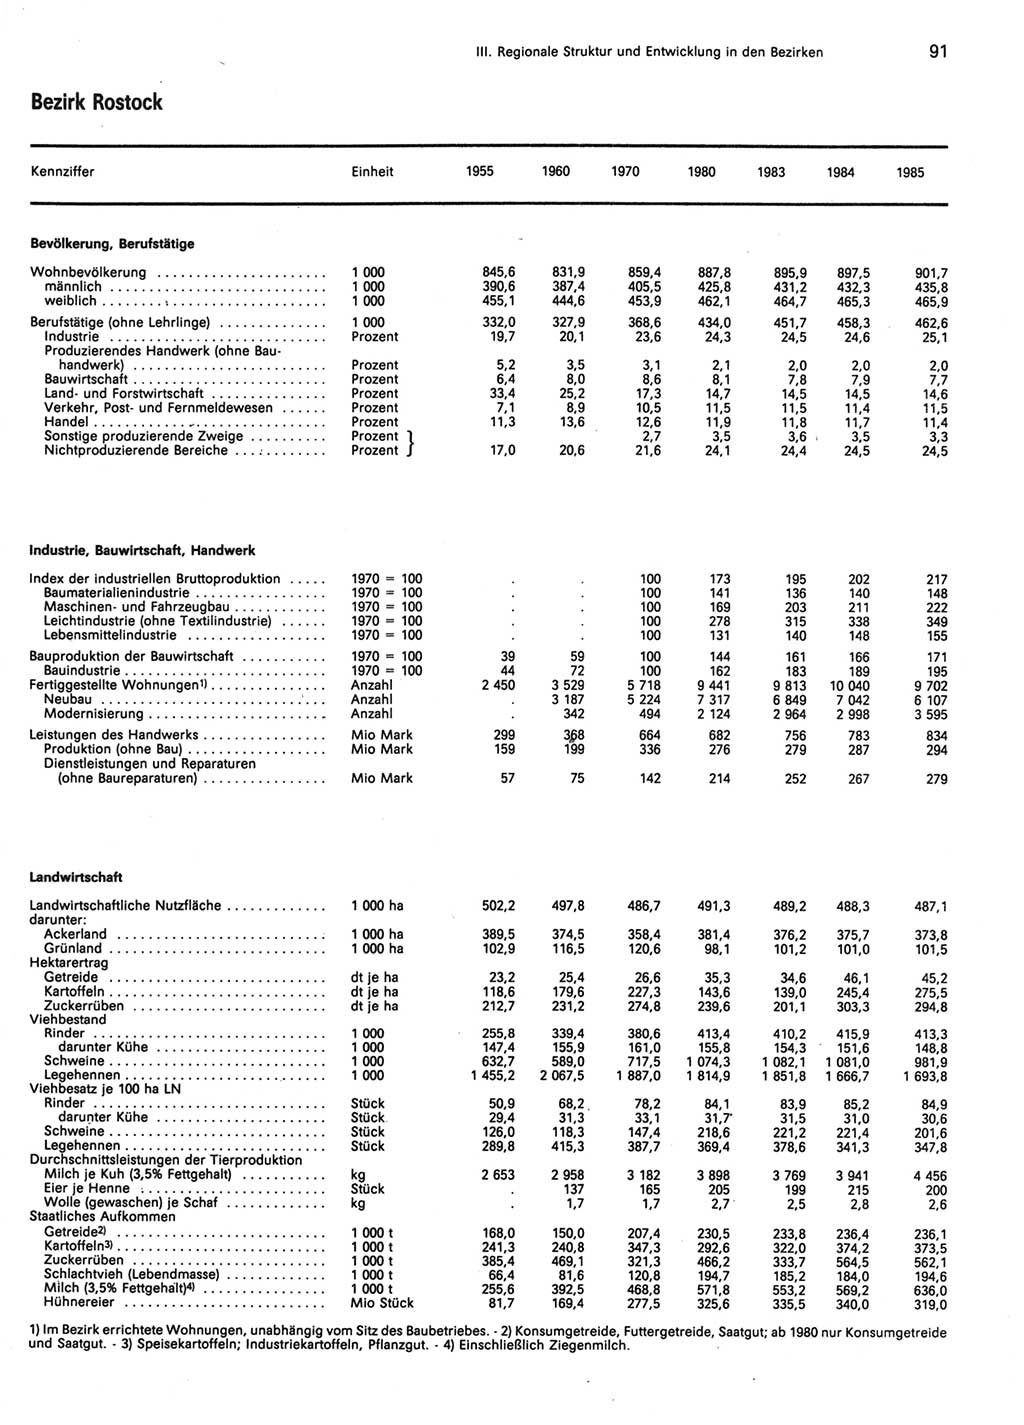 Statistisches Jahrbuch der Deutschen Demokratischen Republik (DDR) 1986, Seite 91 (Stat. Jb. DDR 1986, S. 91)